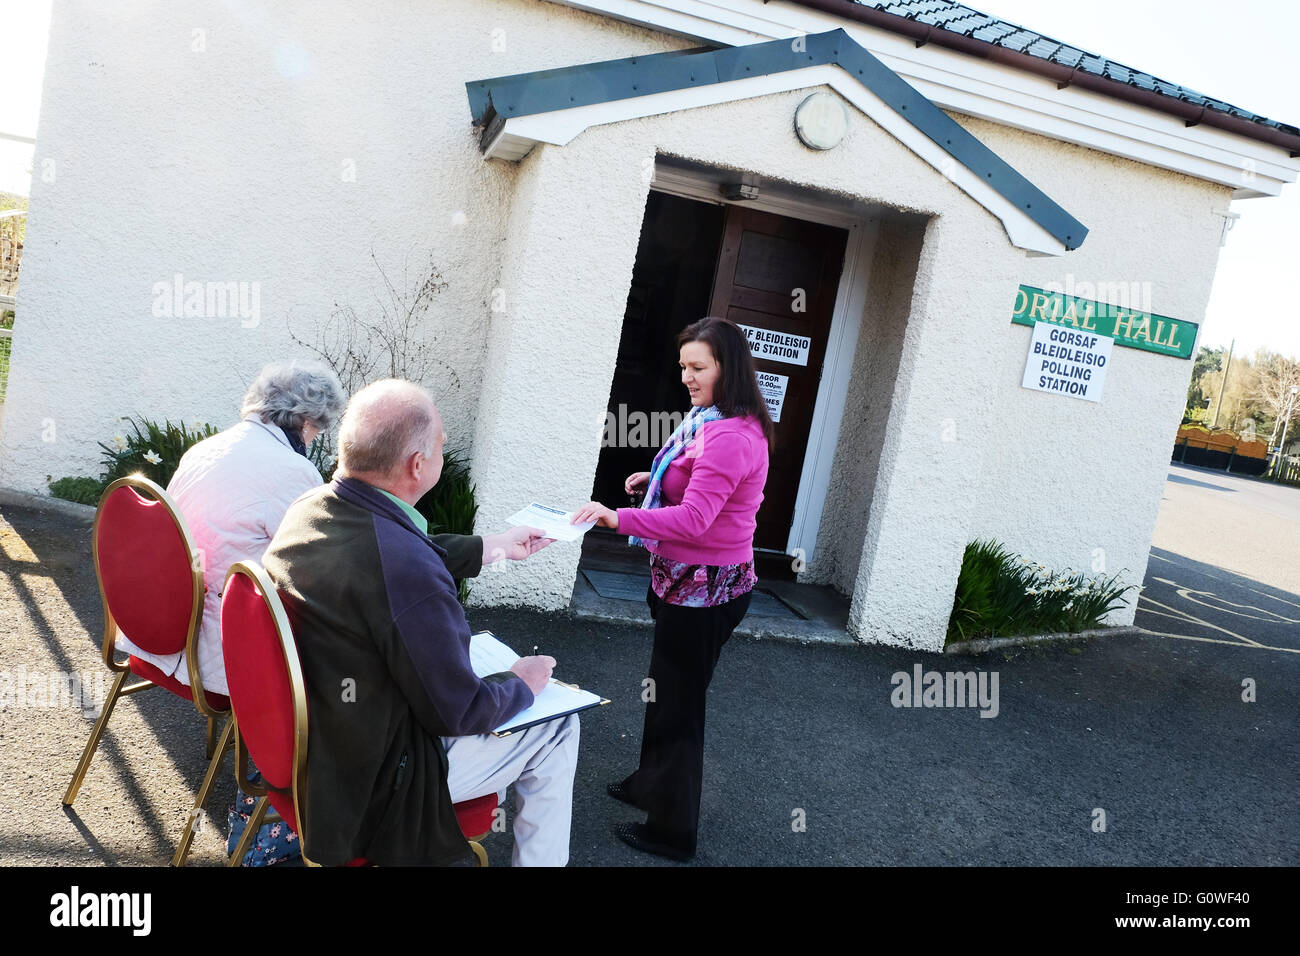 Presteigne, Powys, UK. 5. Mai 2016. Ein Wähler am frühen Morgen kommt im Wahllokal in der Dorfhalle in der Stadt von Presteigne, Powys - Wähler in Wales Stimmen Mitglieder für die Waliser Versammlung und auch die lokale Polizei und Kriminalität Kommissare zu wählen. Stockfoto